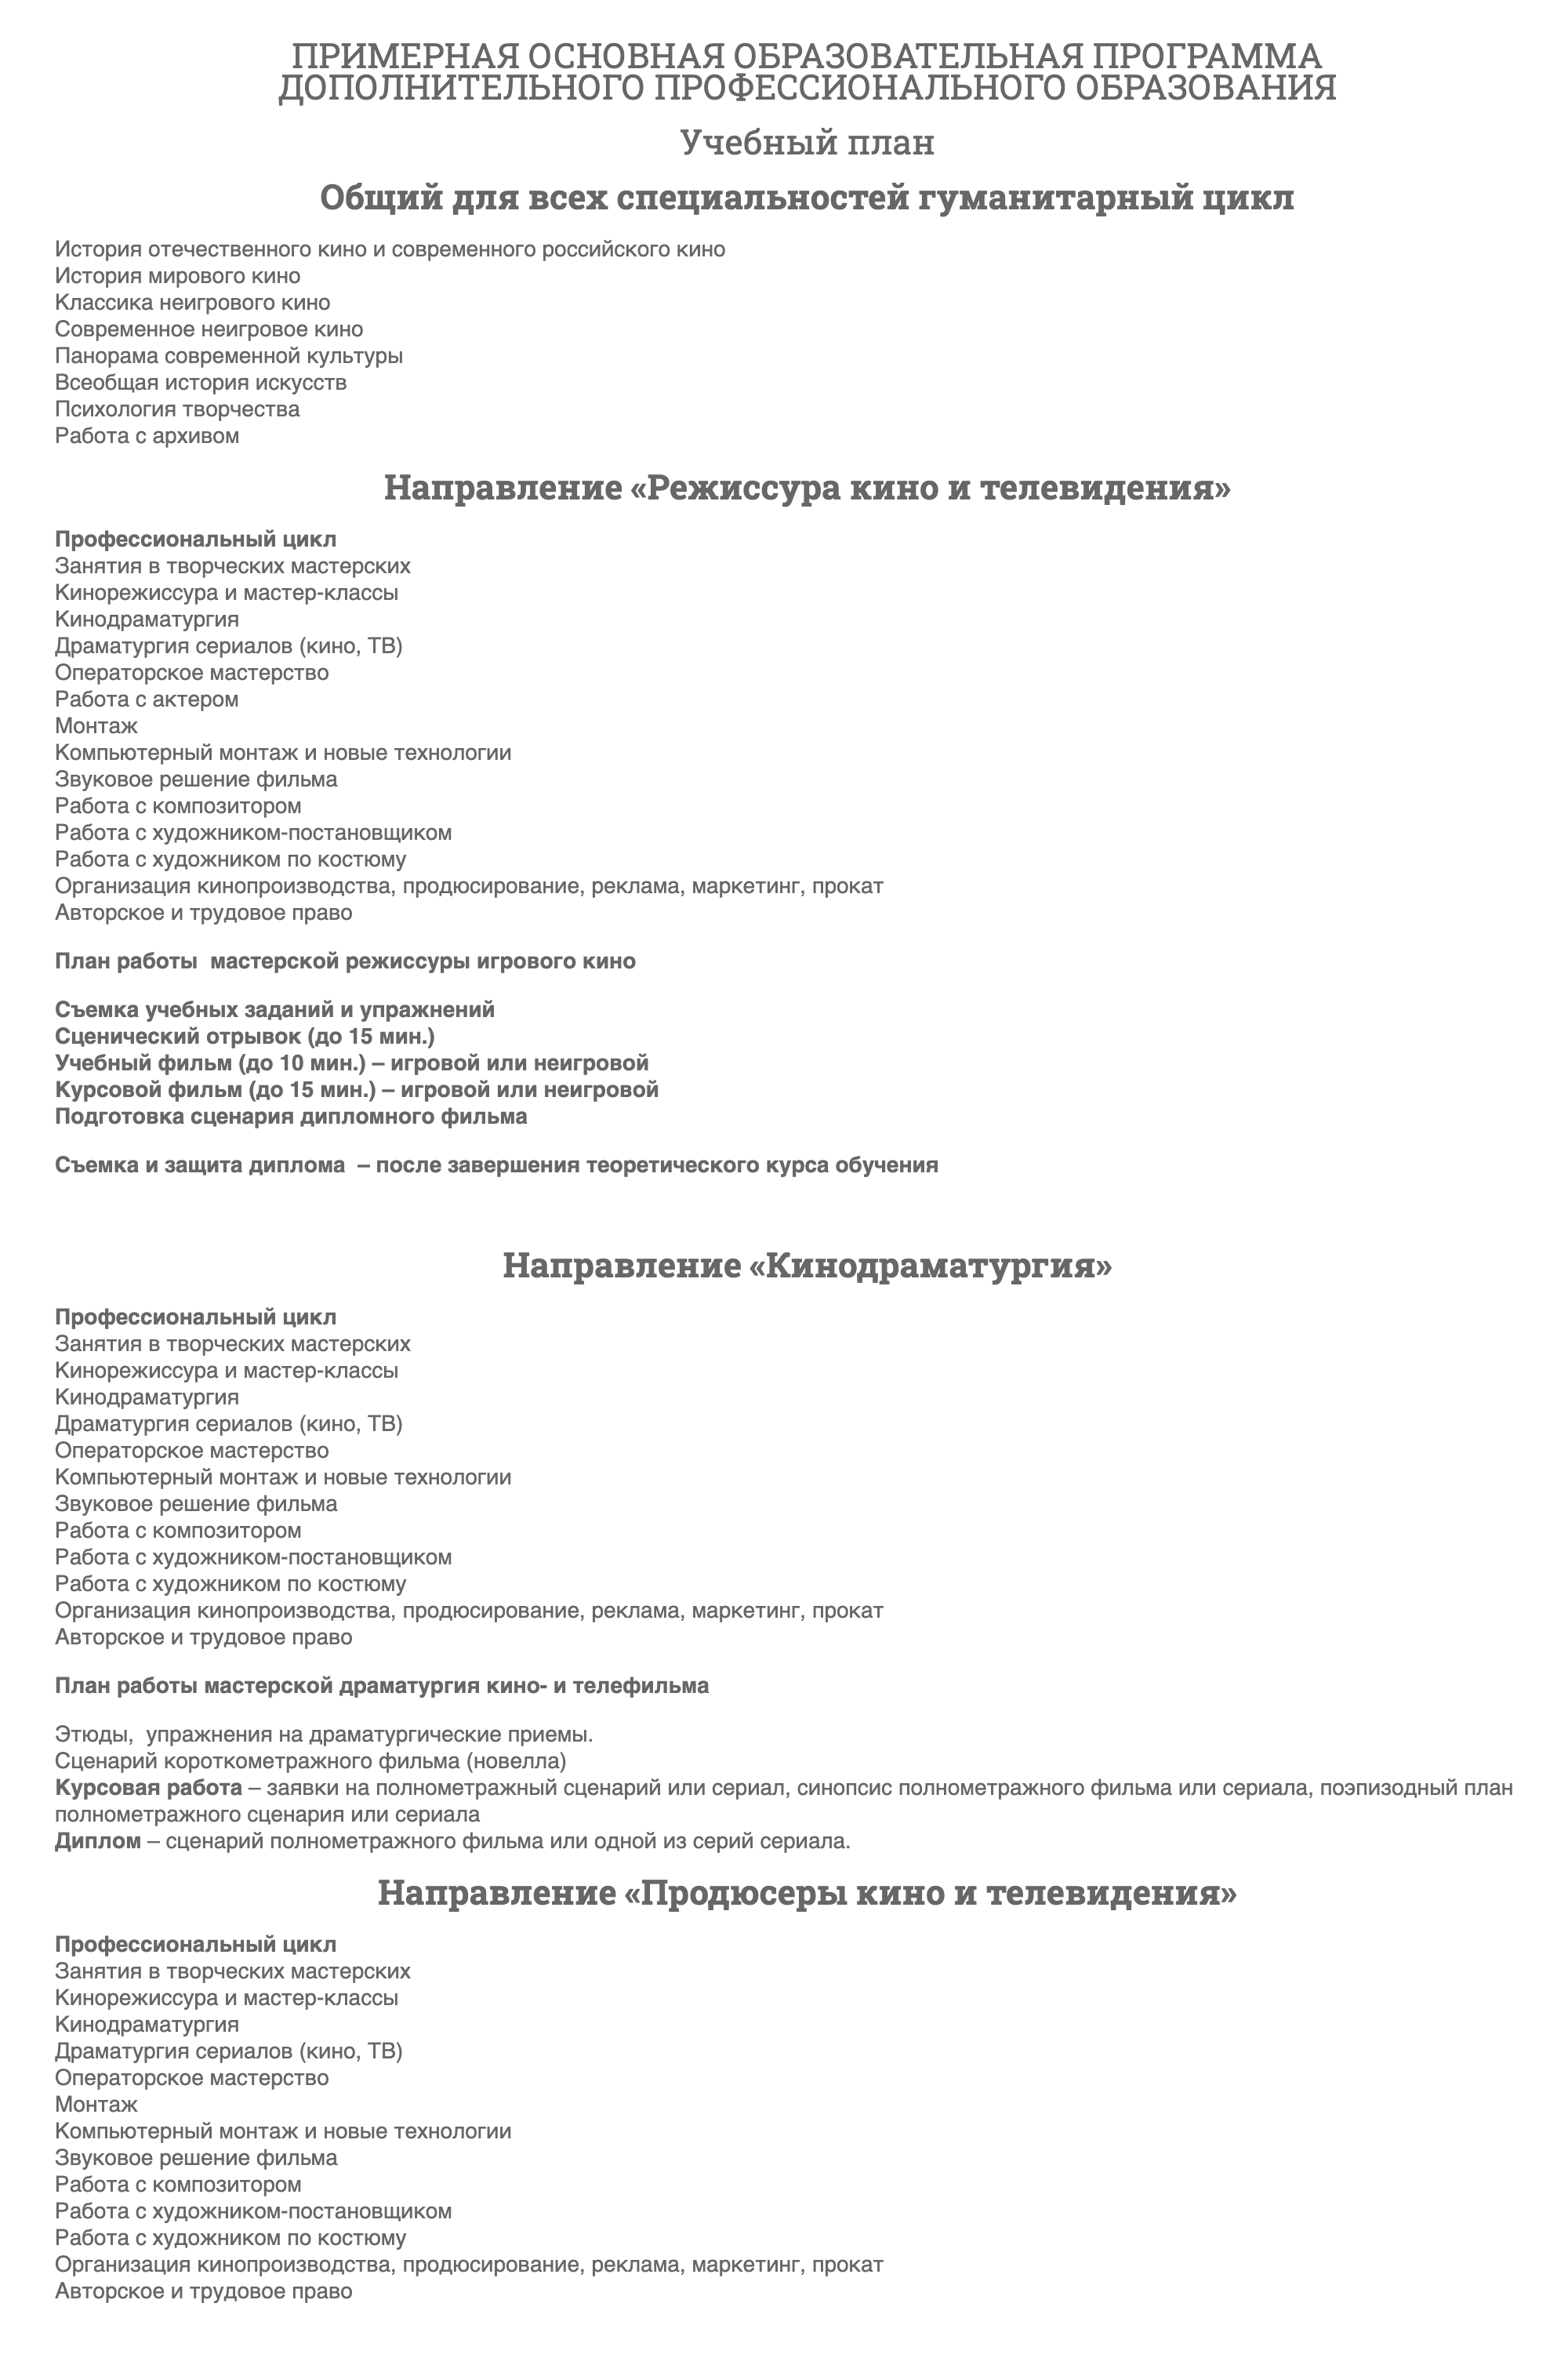 Программа Высших курсов сценаристов и режиссеров. Источник: kinobraz.ru